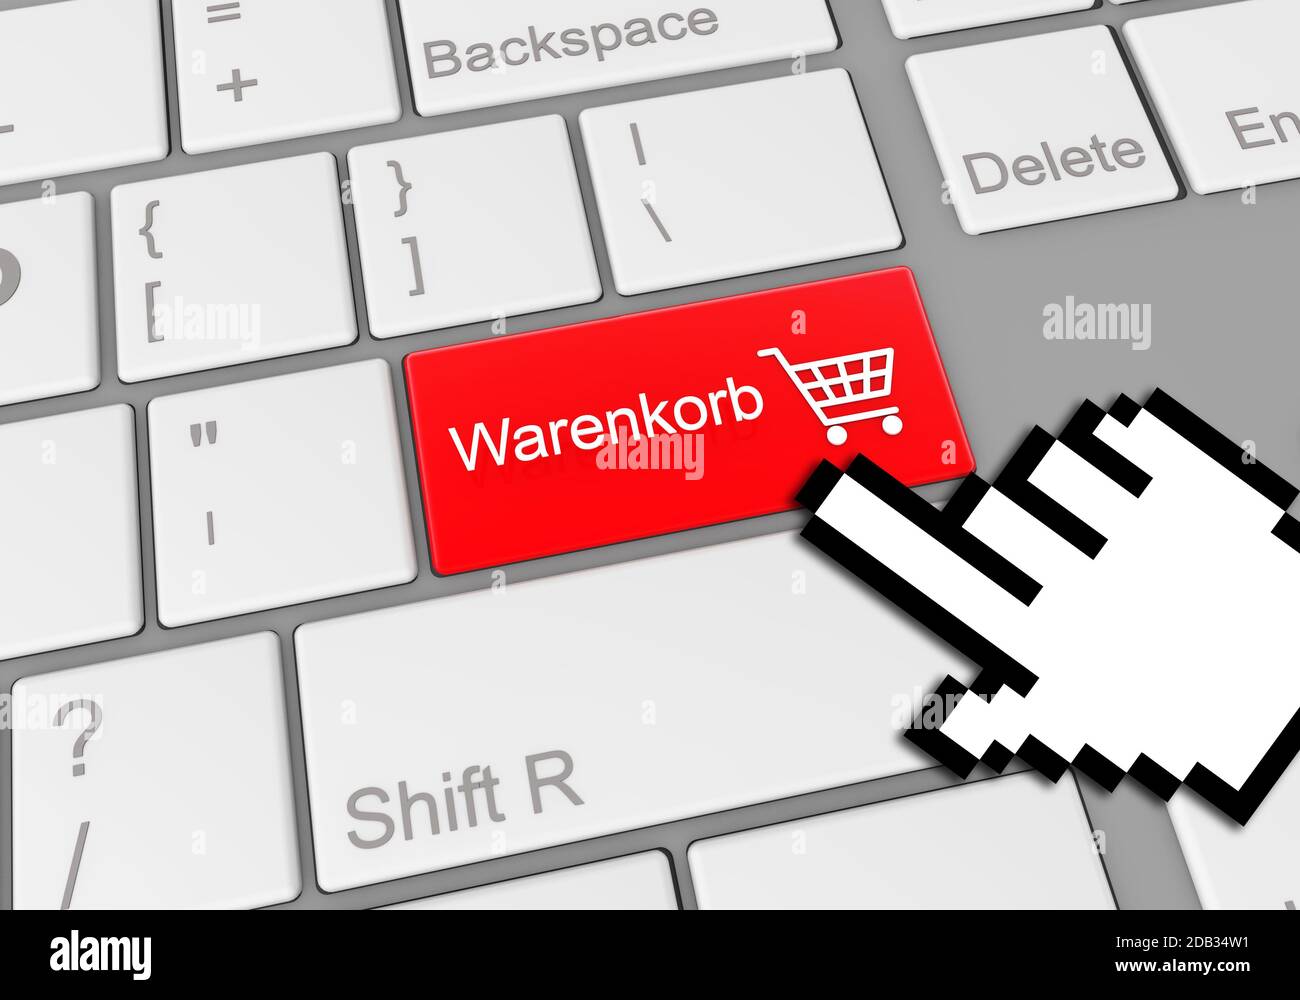 Eine digitale Abbildung eines Mausklicks auf eine rote Warenkorb-Tastatur-Taste  in deutsch für den Online-Einkauf Stockfotografie - Alamy